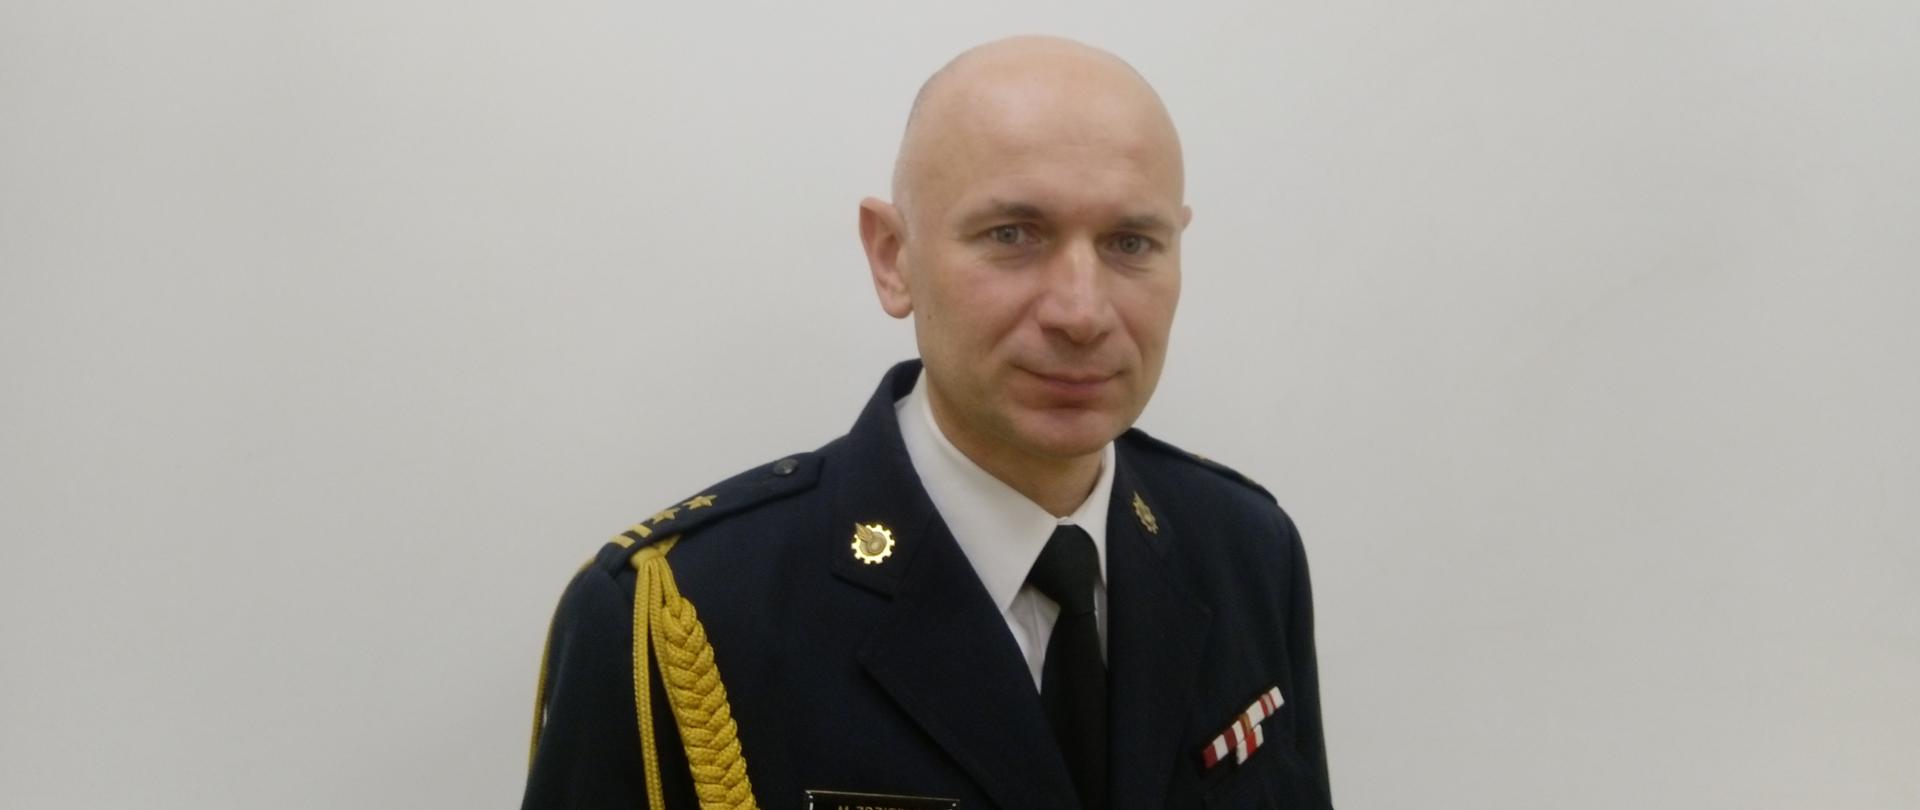 Komendant Miejski PSP w Żorach bryg. Marek Zdziebło w mundurze wyjściowym w białej koszuli pod krawatem ustawiony na białym tle. Zdjęcie portretowe z prawym ramieniem zwróconym lekko do przodu